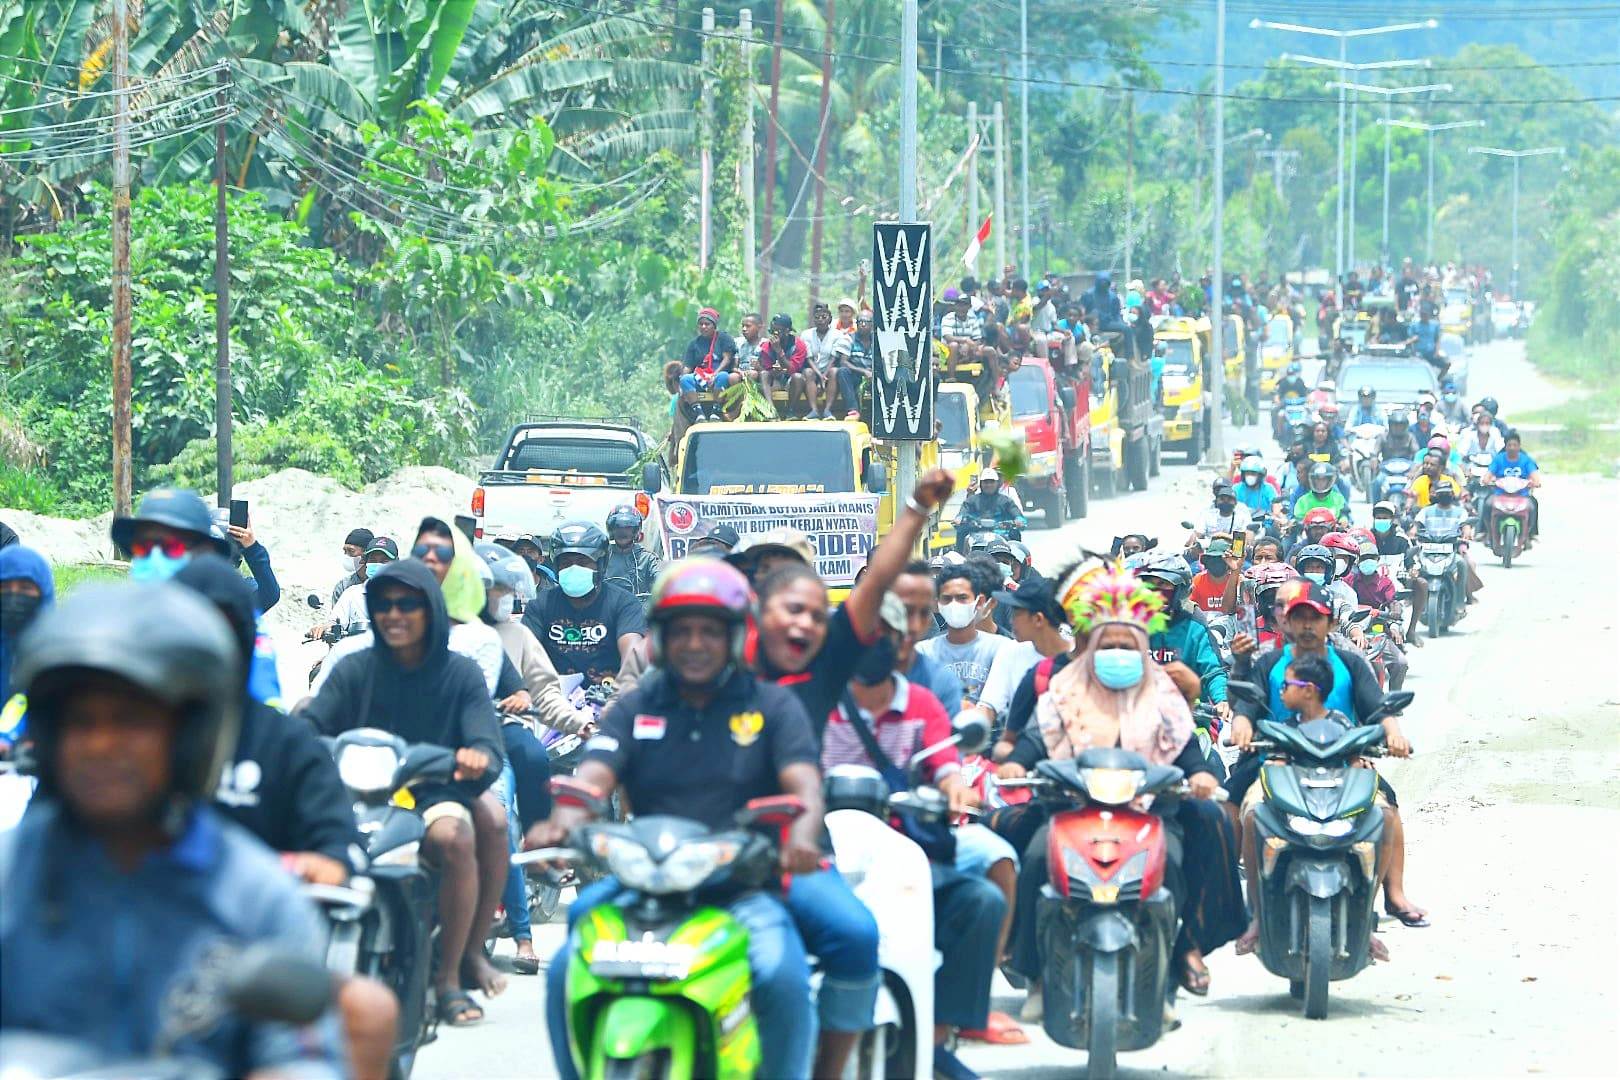 Legislator Origenes Kawai sebut demo soal pembangunan jalan harus tepat sasaran 1 i Papua